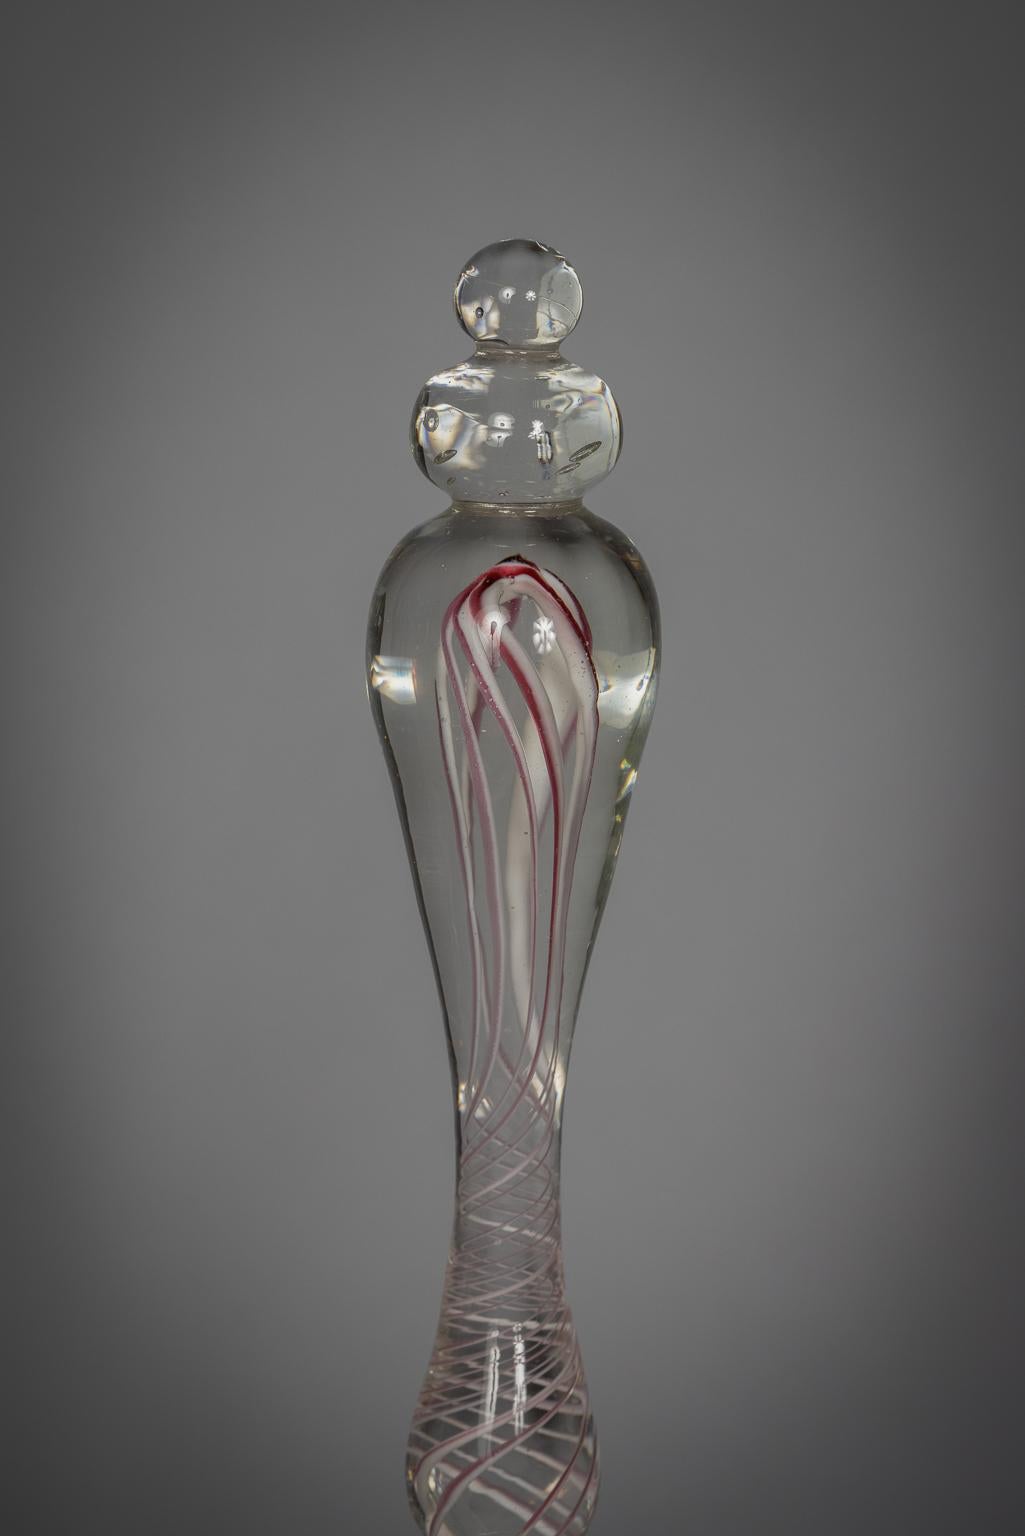 Cloches blanches avec lèvre rouge et poignées internes en spirale rouge, avec claquement en verre transparent.